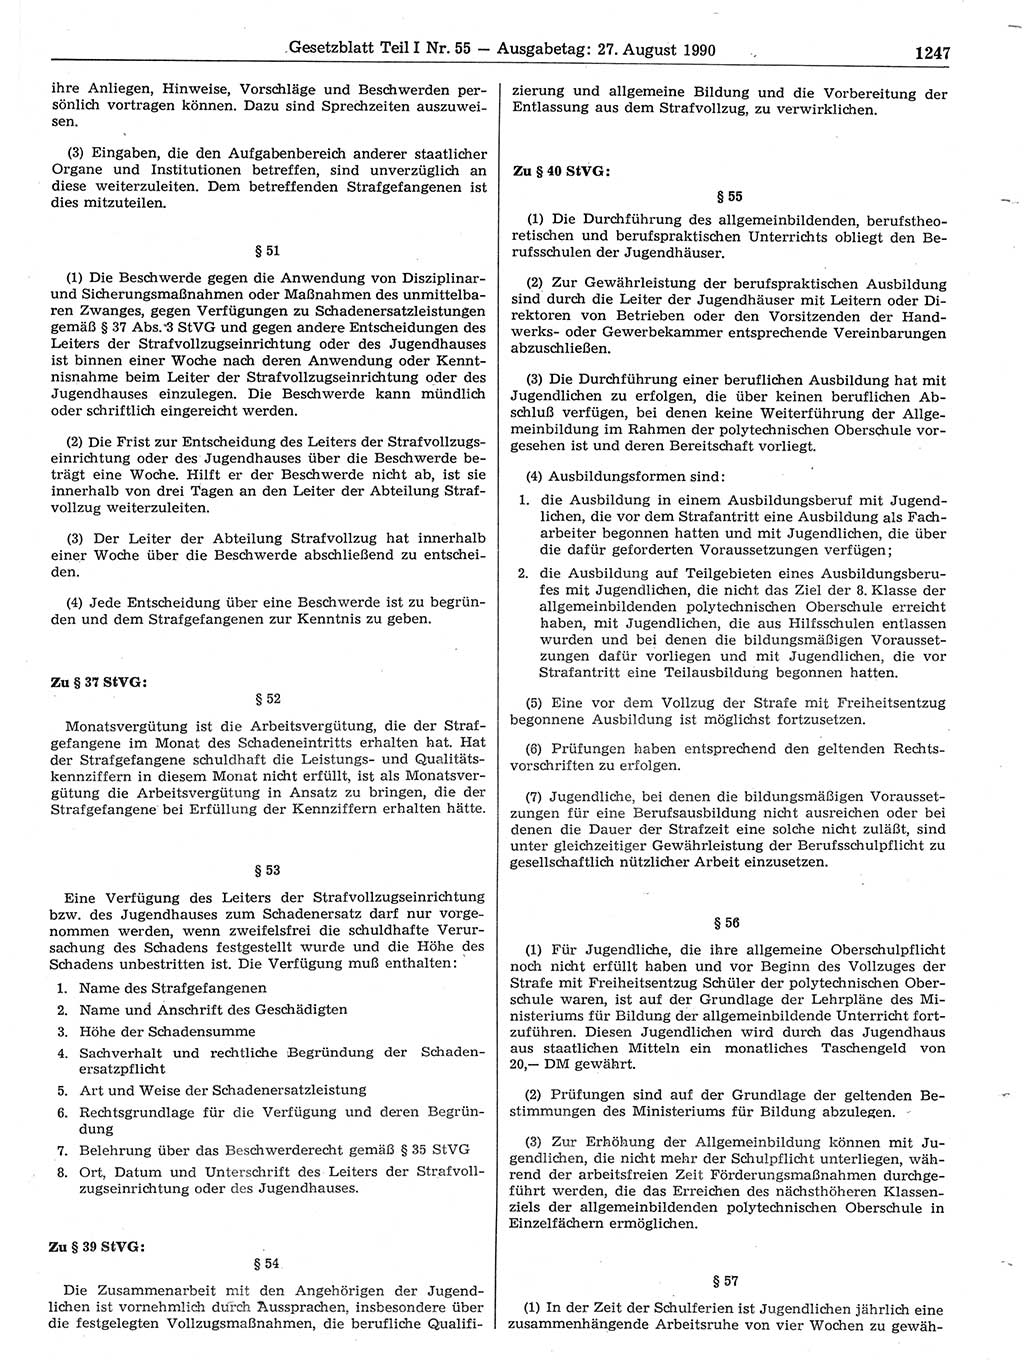 Gesetzblatt (GBl.) der Deutschen Demokratischen Republik (DDR) Teil Ⅰ 1990, Seite 1247 (GBl. DDR Ⅰ 1990, S. 1247)